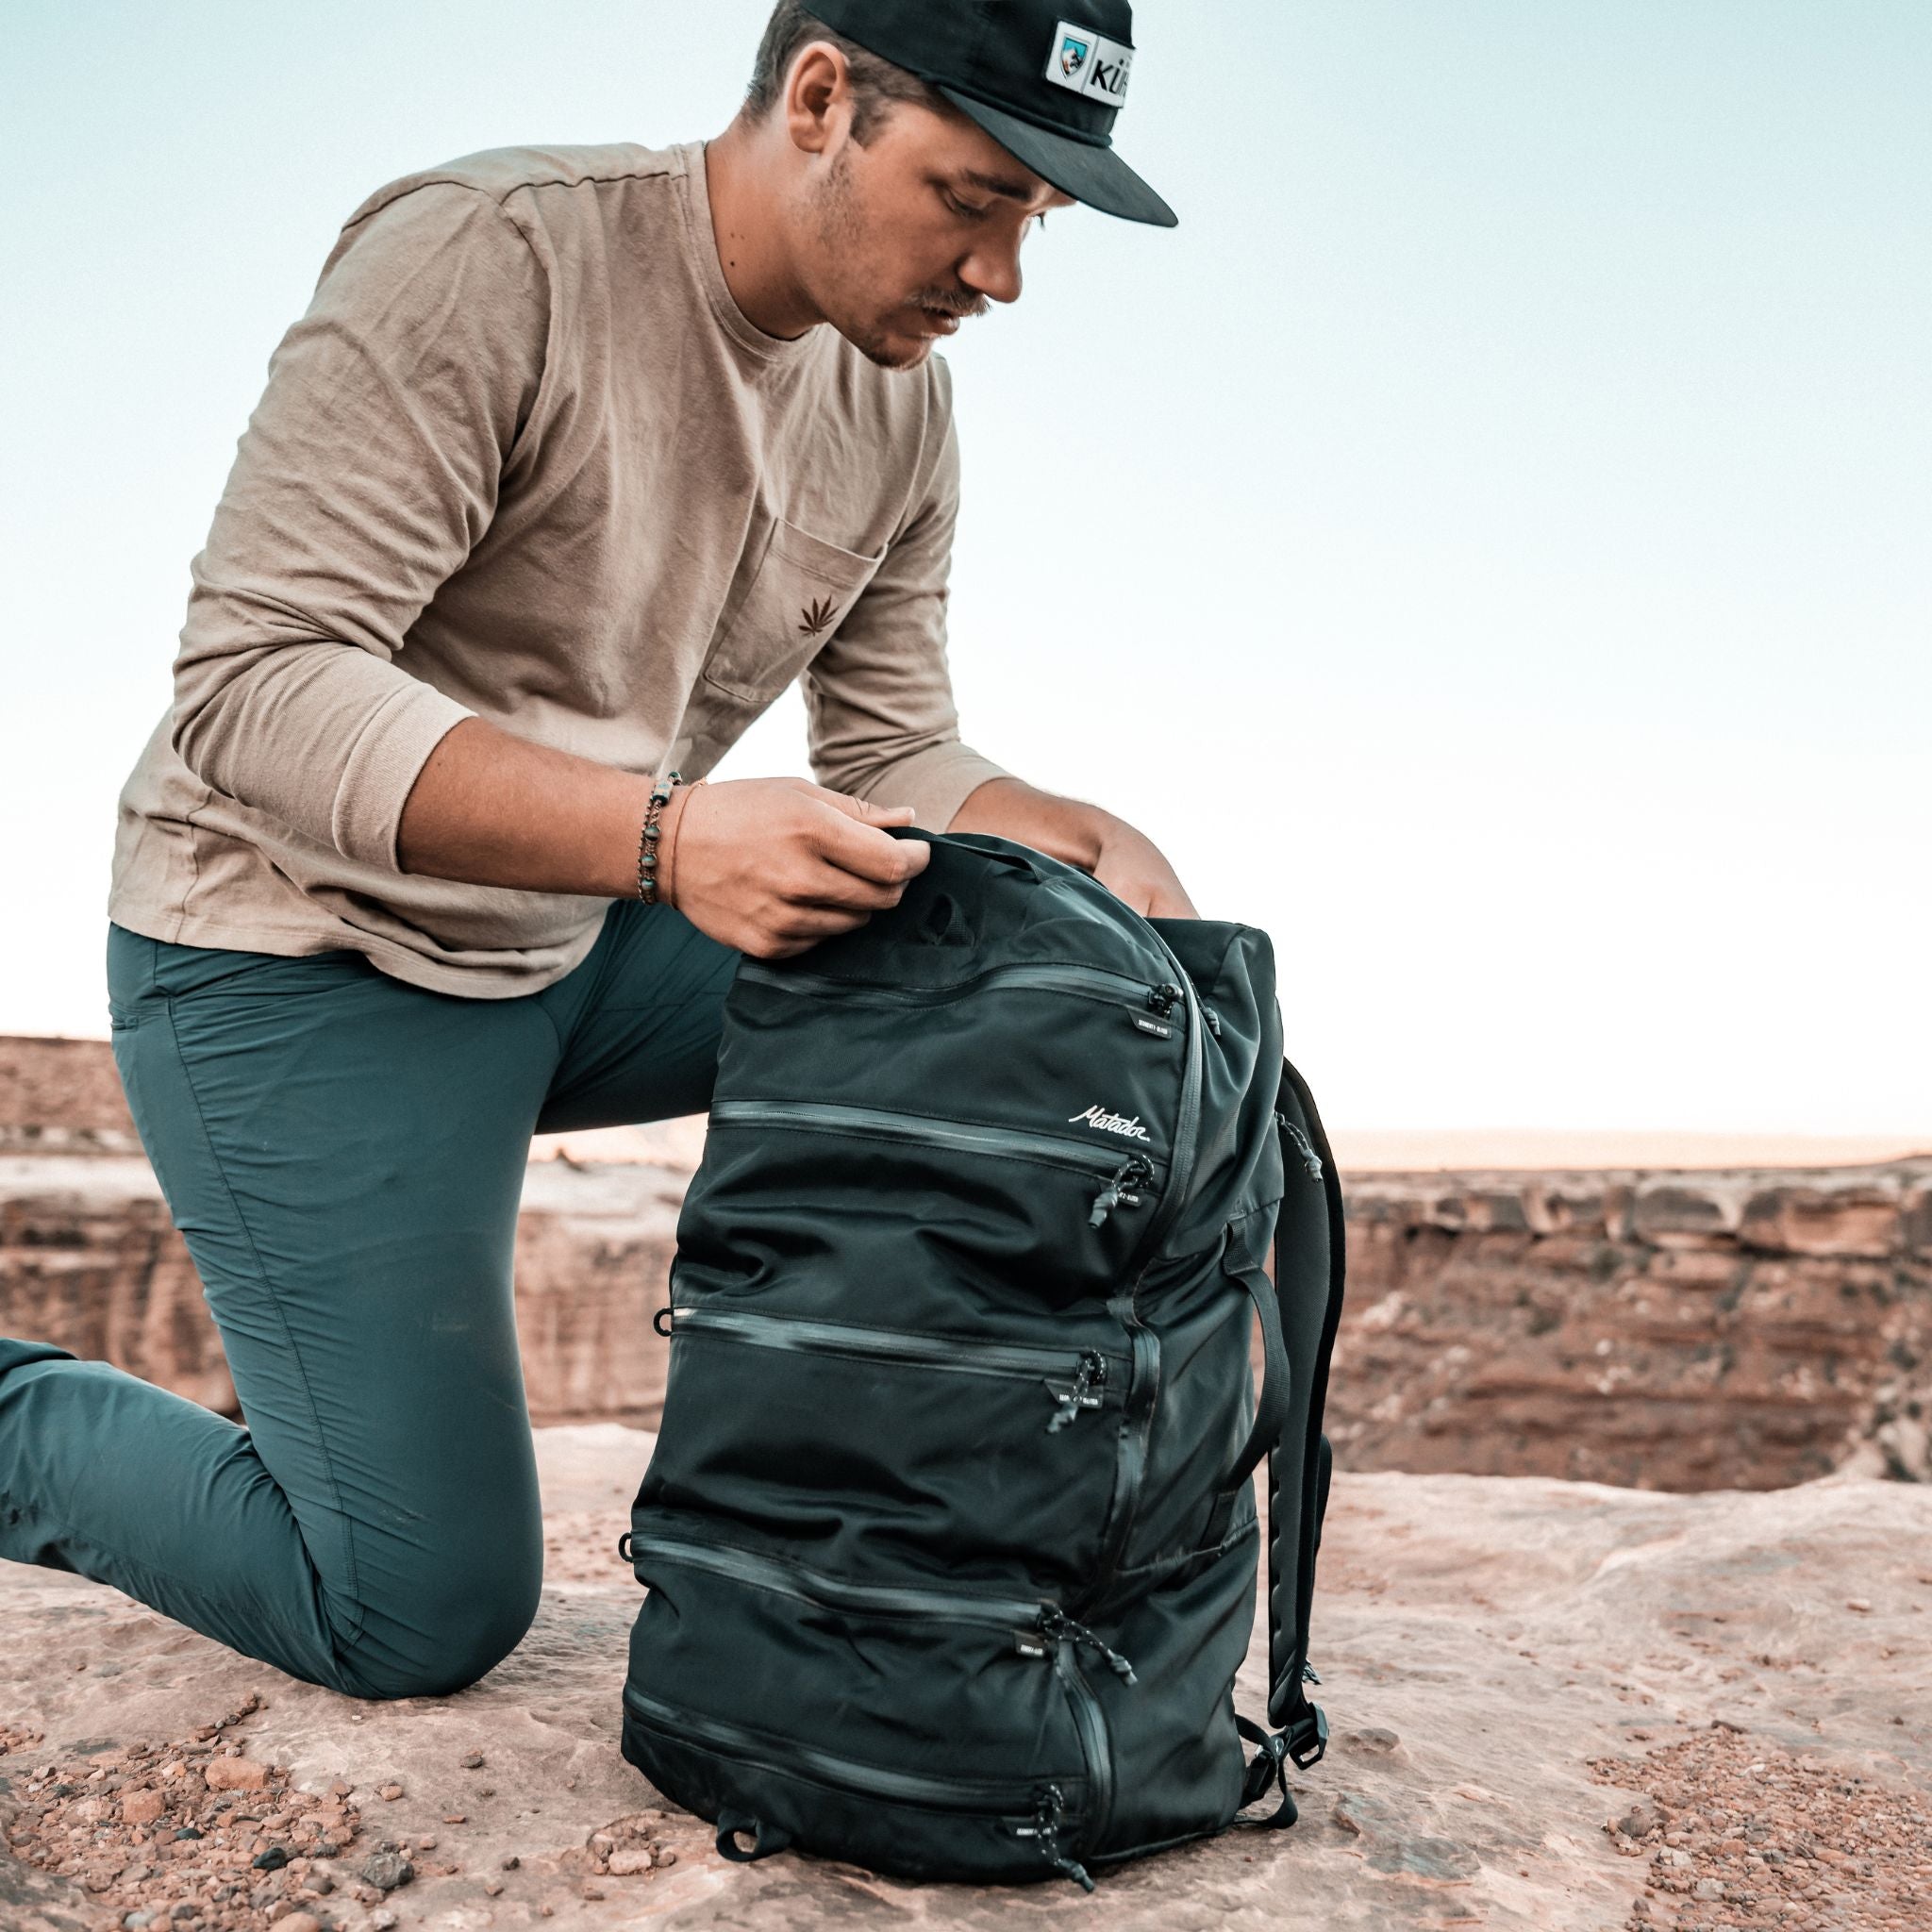 SEG45 Travel Pack - rejsetaske med 45 liters kapacitet - kan bæres som rygsæk og duffel bag - integrerede packing cubes - livsstilsbillede